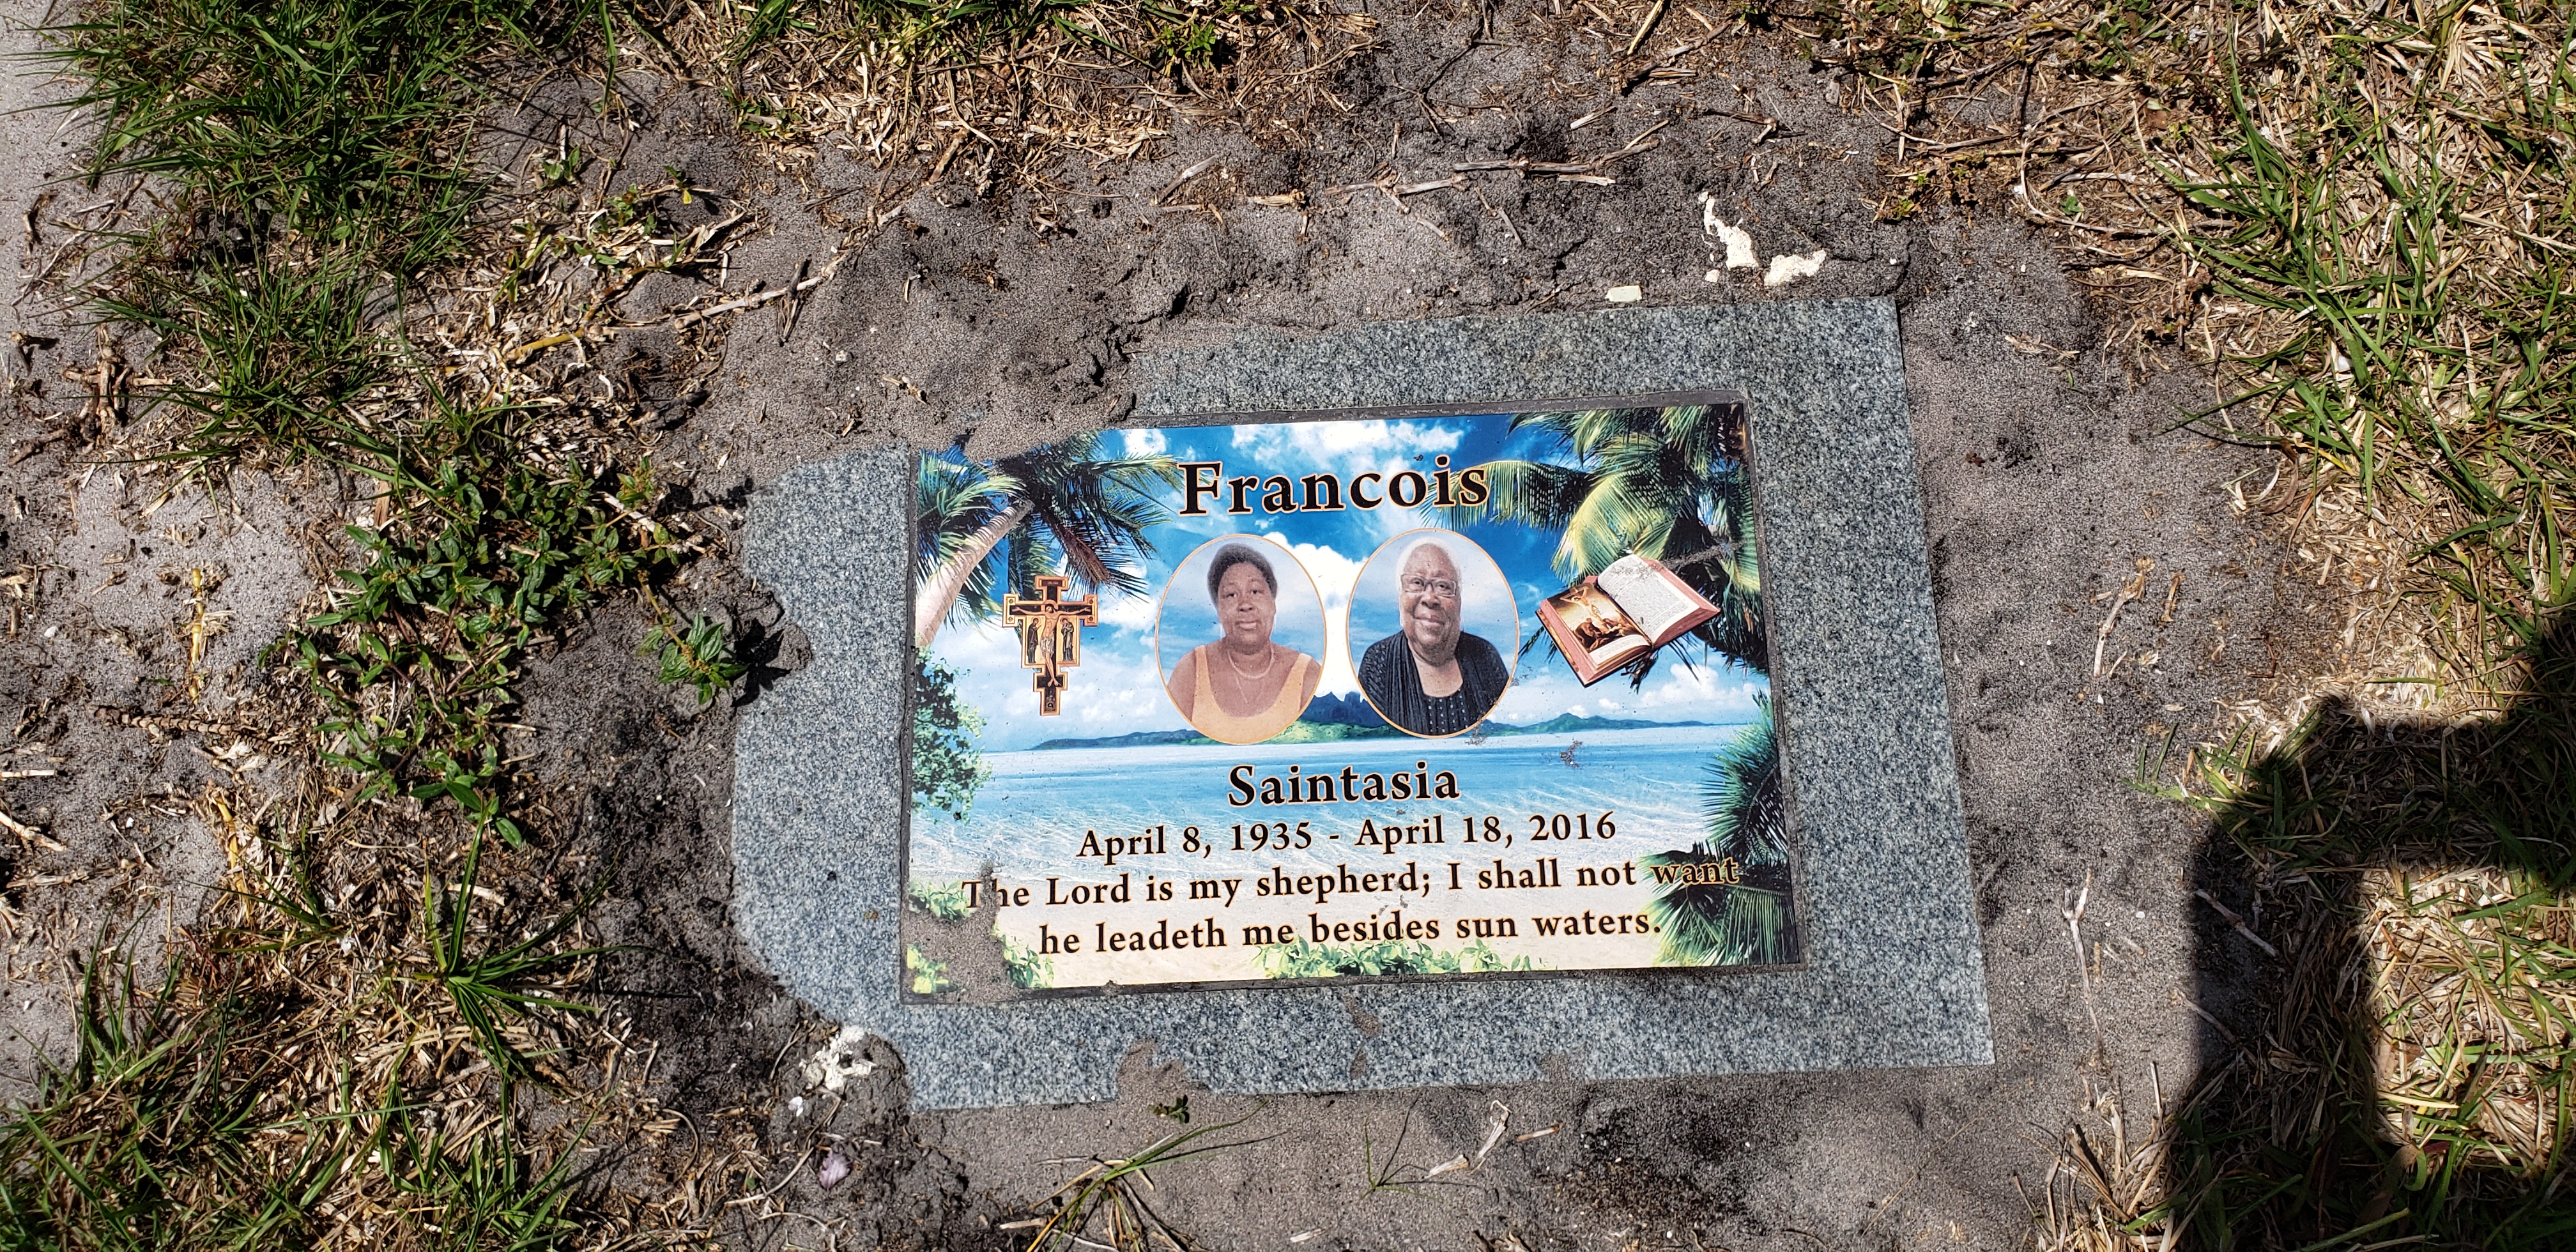 Saintasia Francois